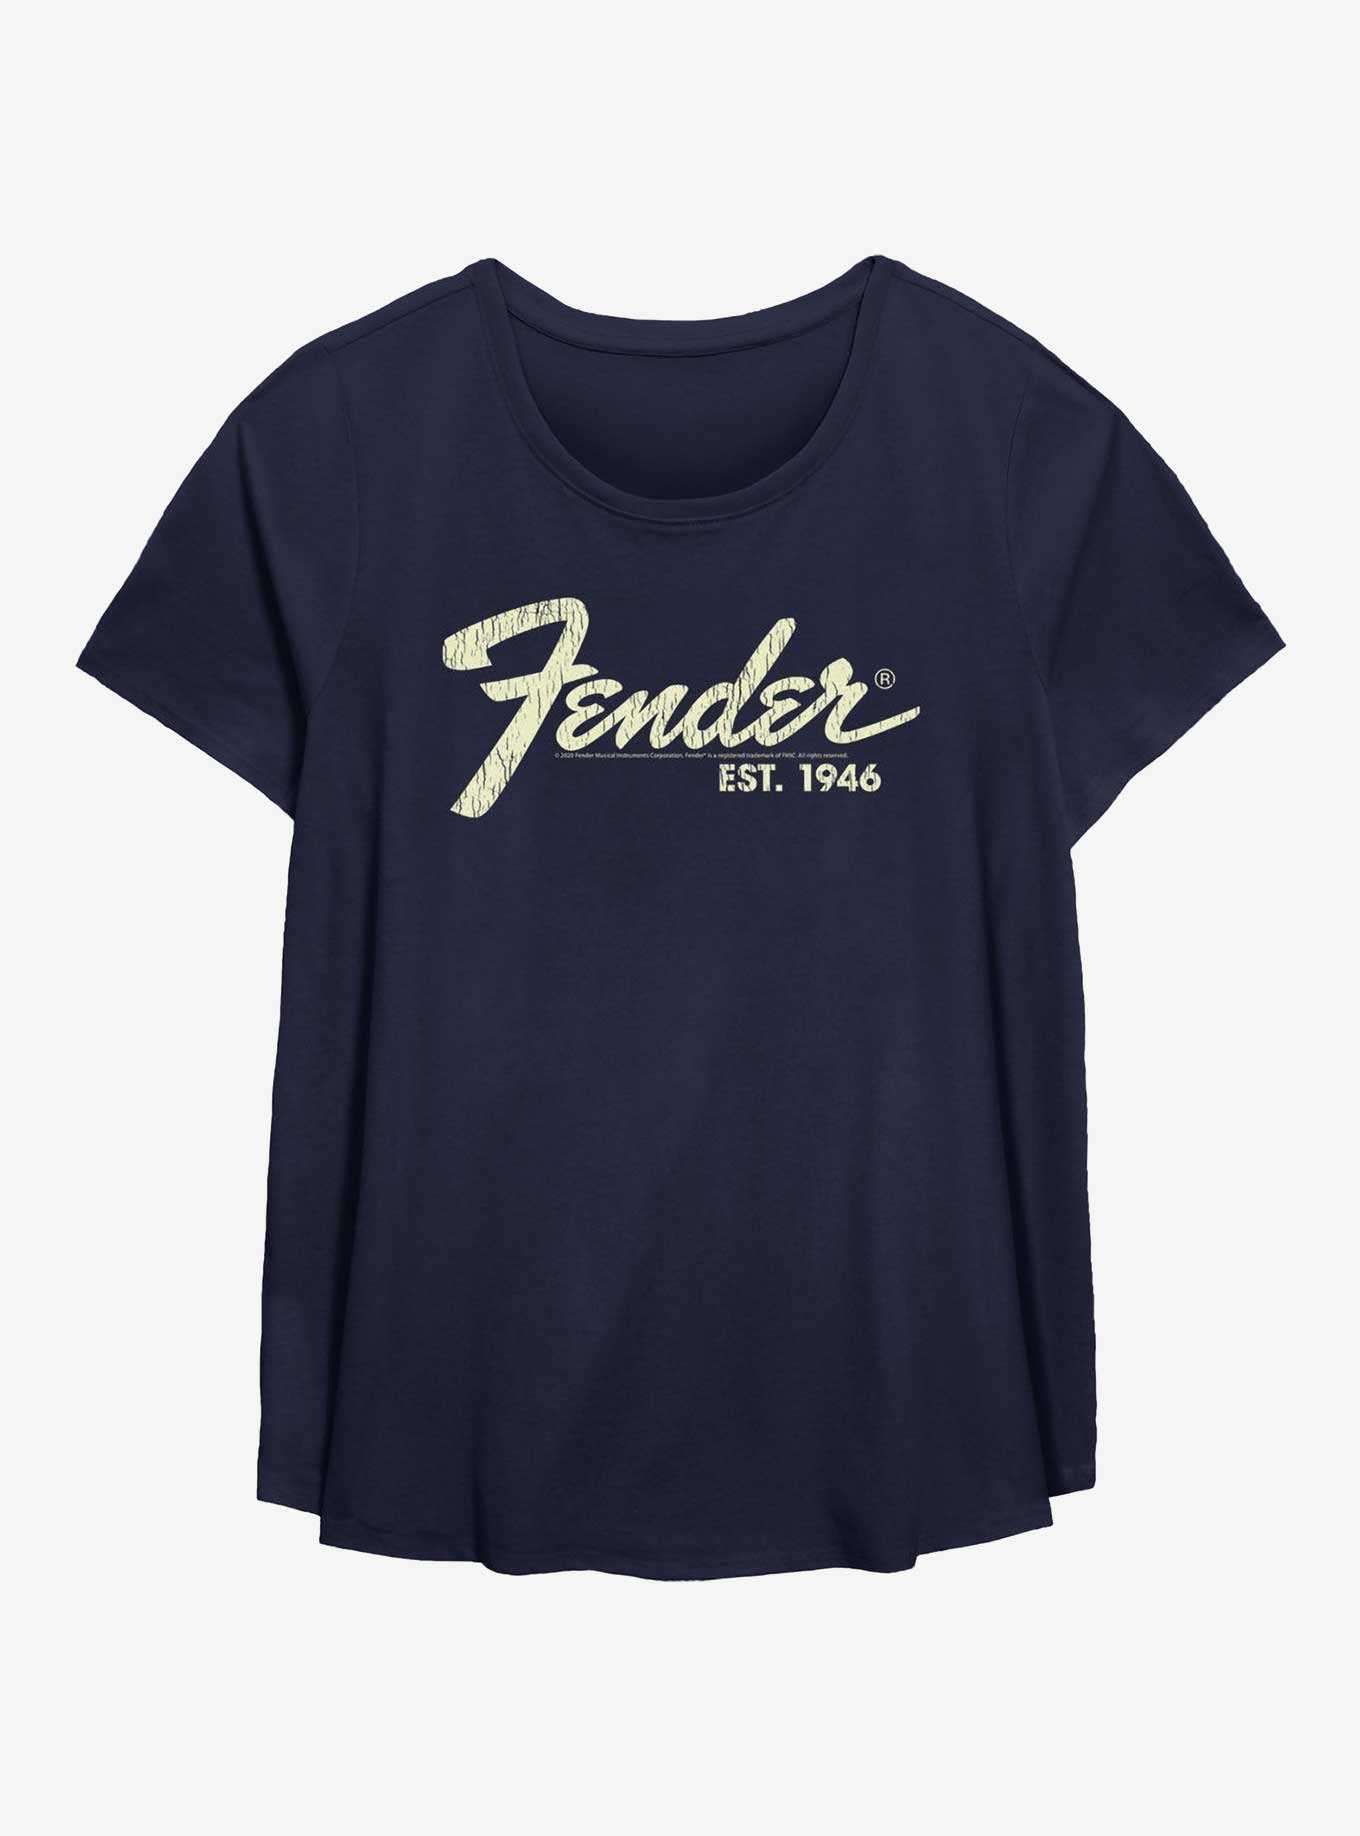 Fender Est. 1946 Girls T-Shirt Plus Size, , hi-res